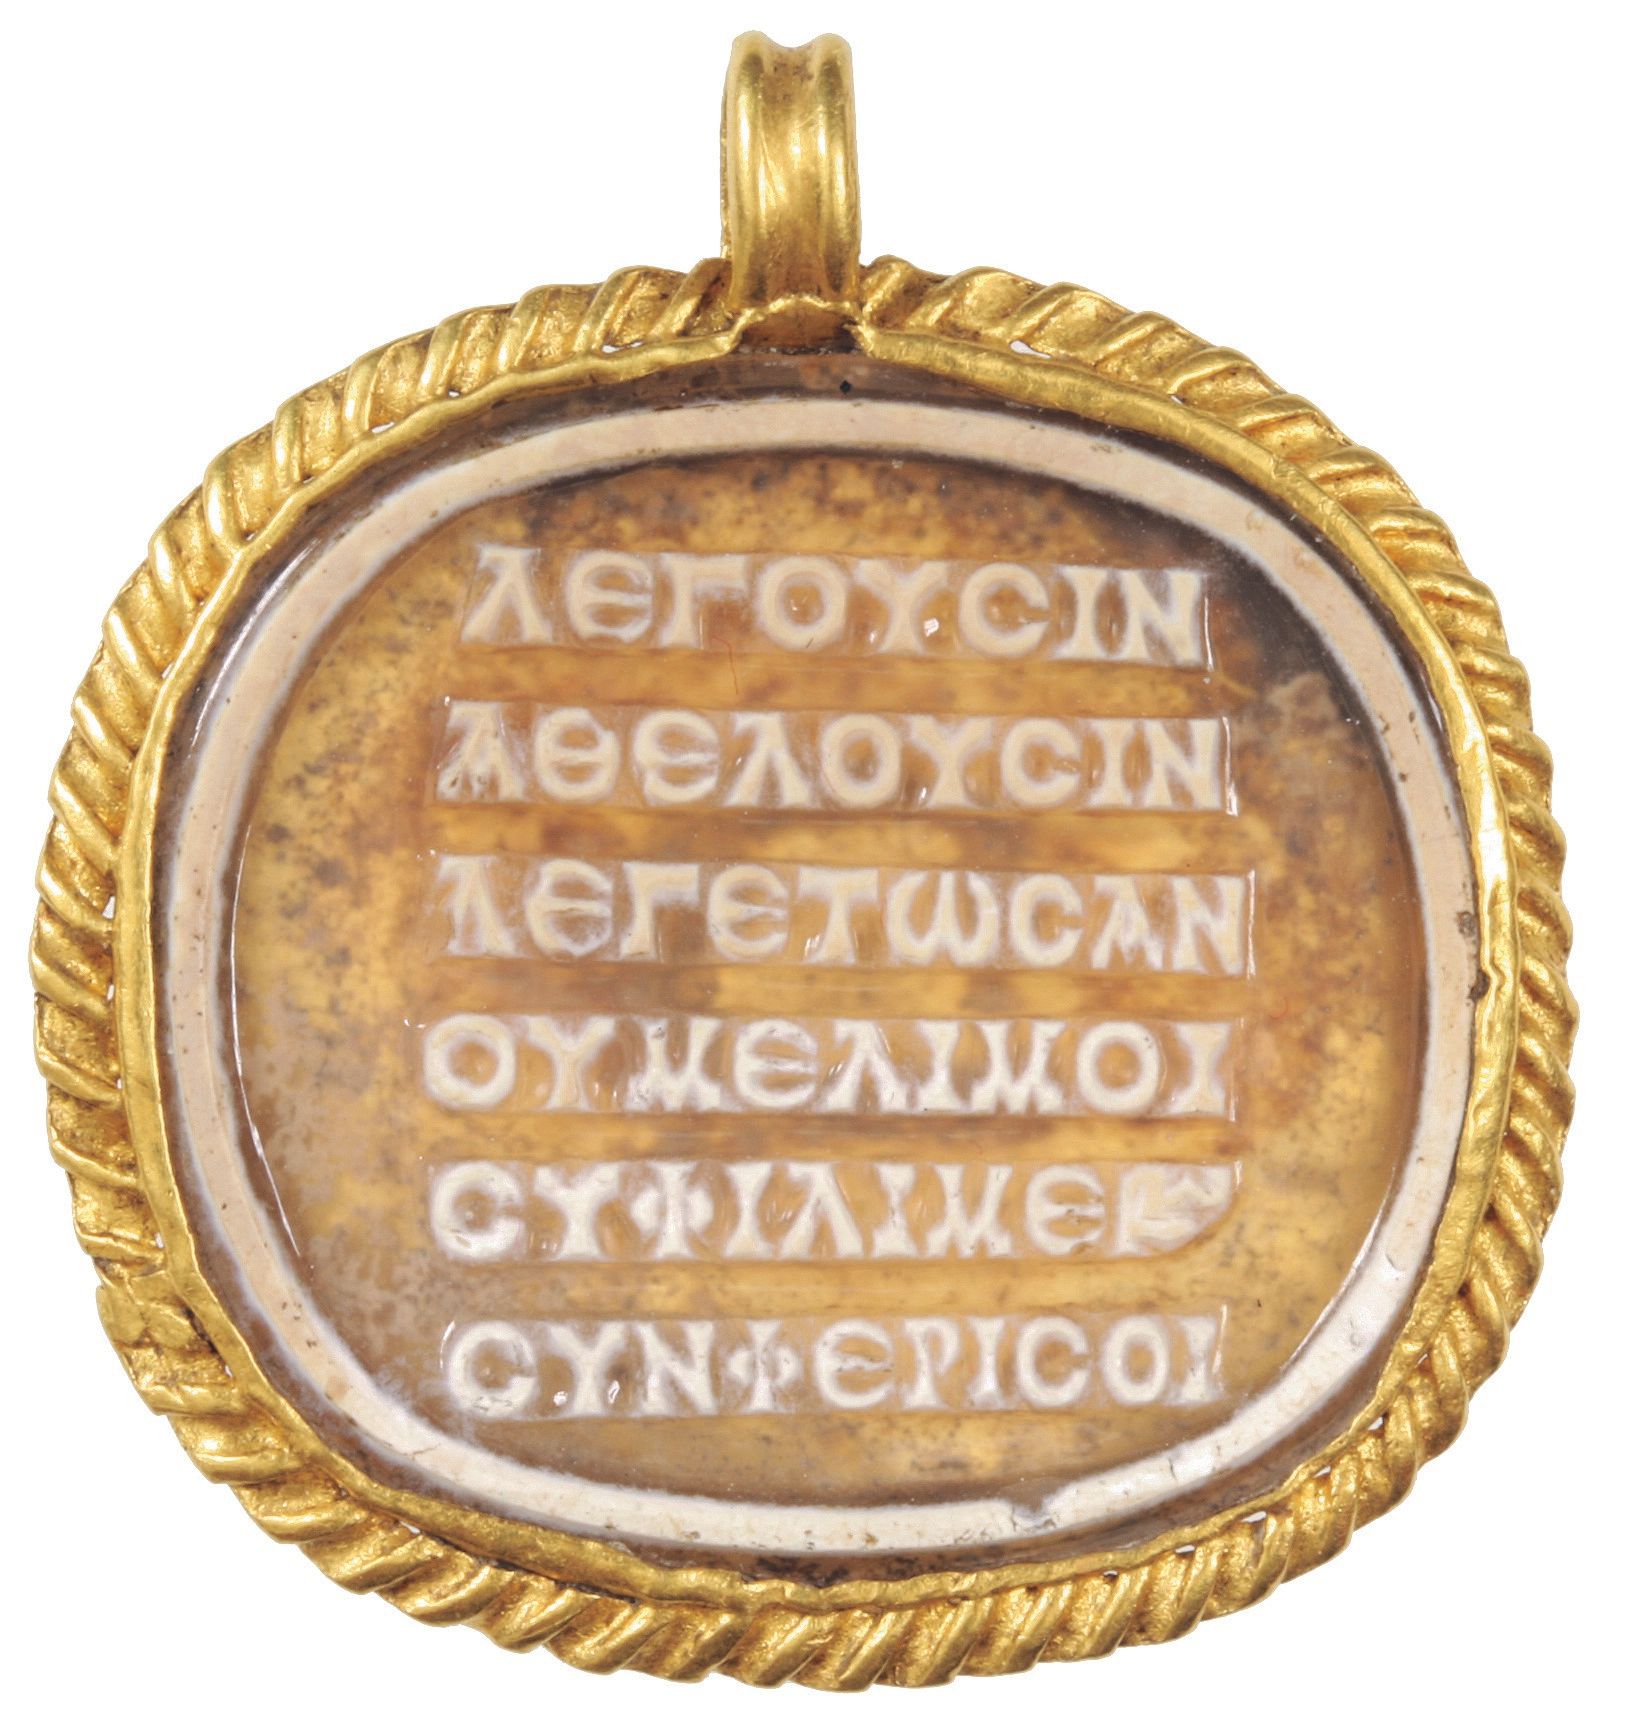 Este es otro poema antiguo escrito en griego, sobre un medallón.